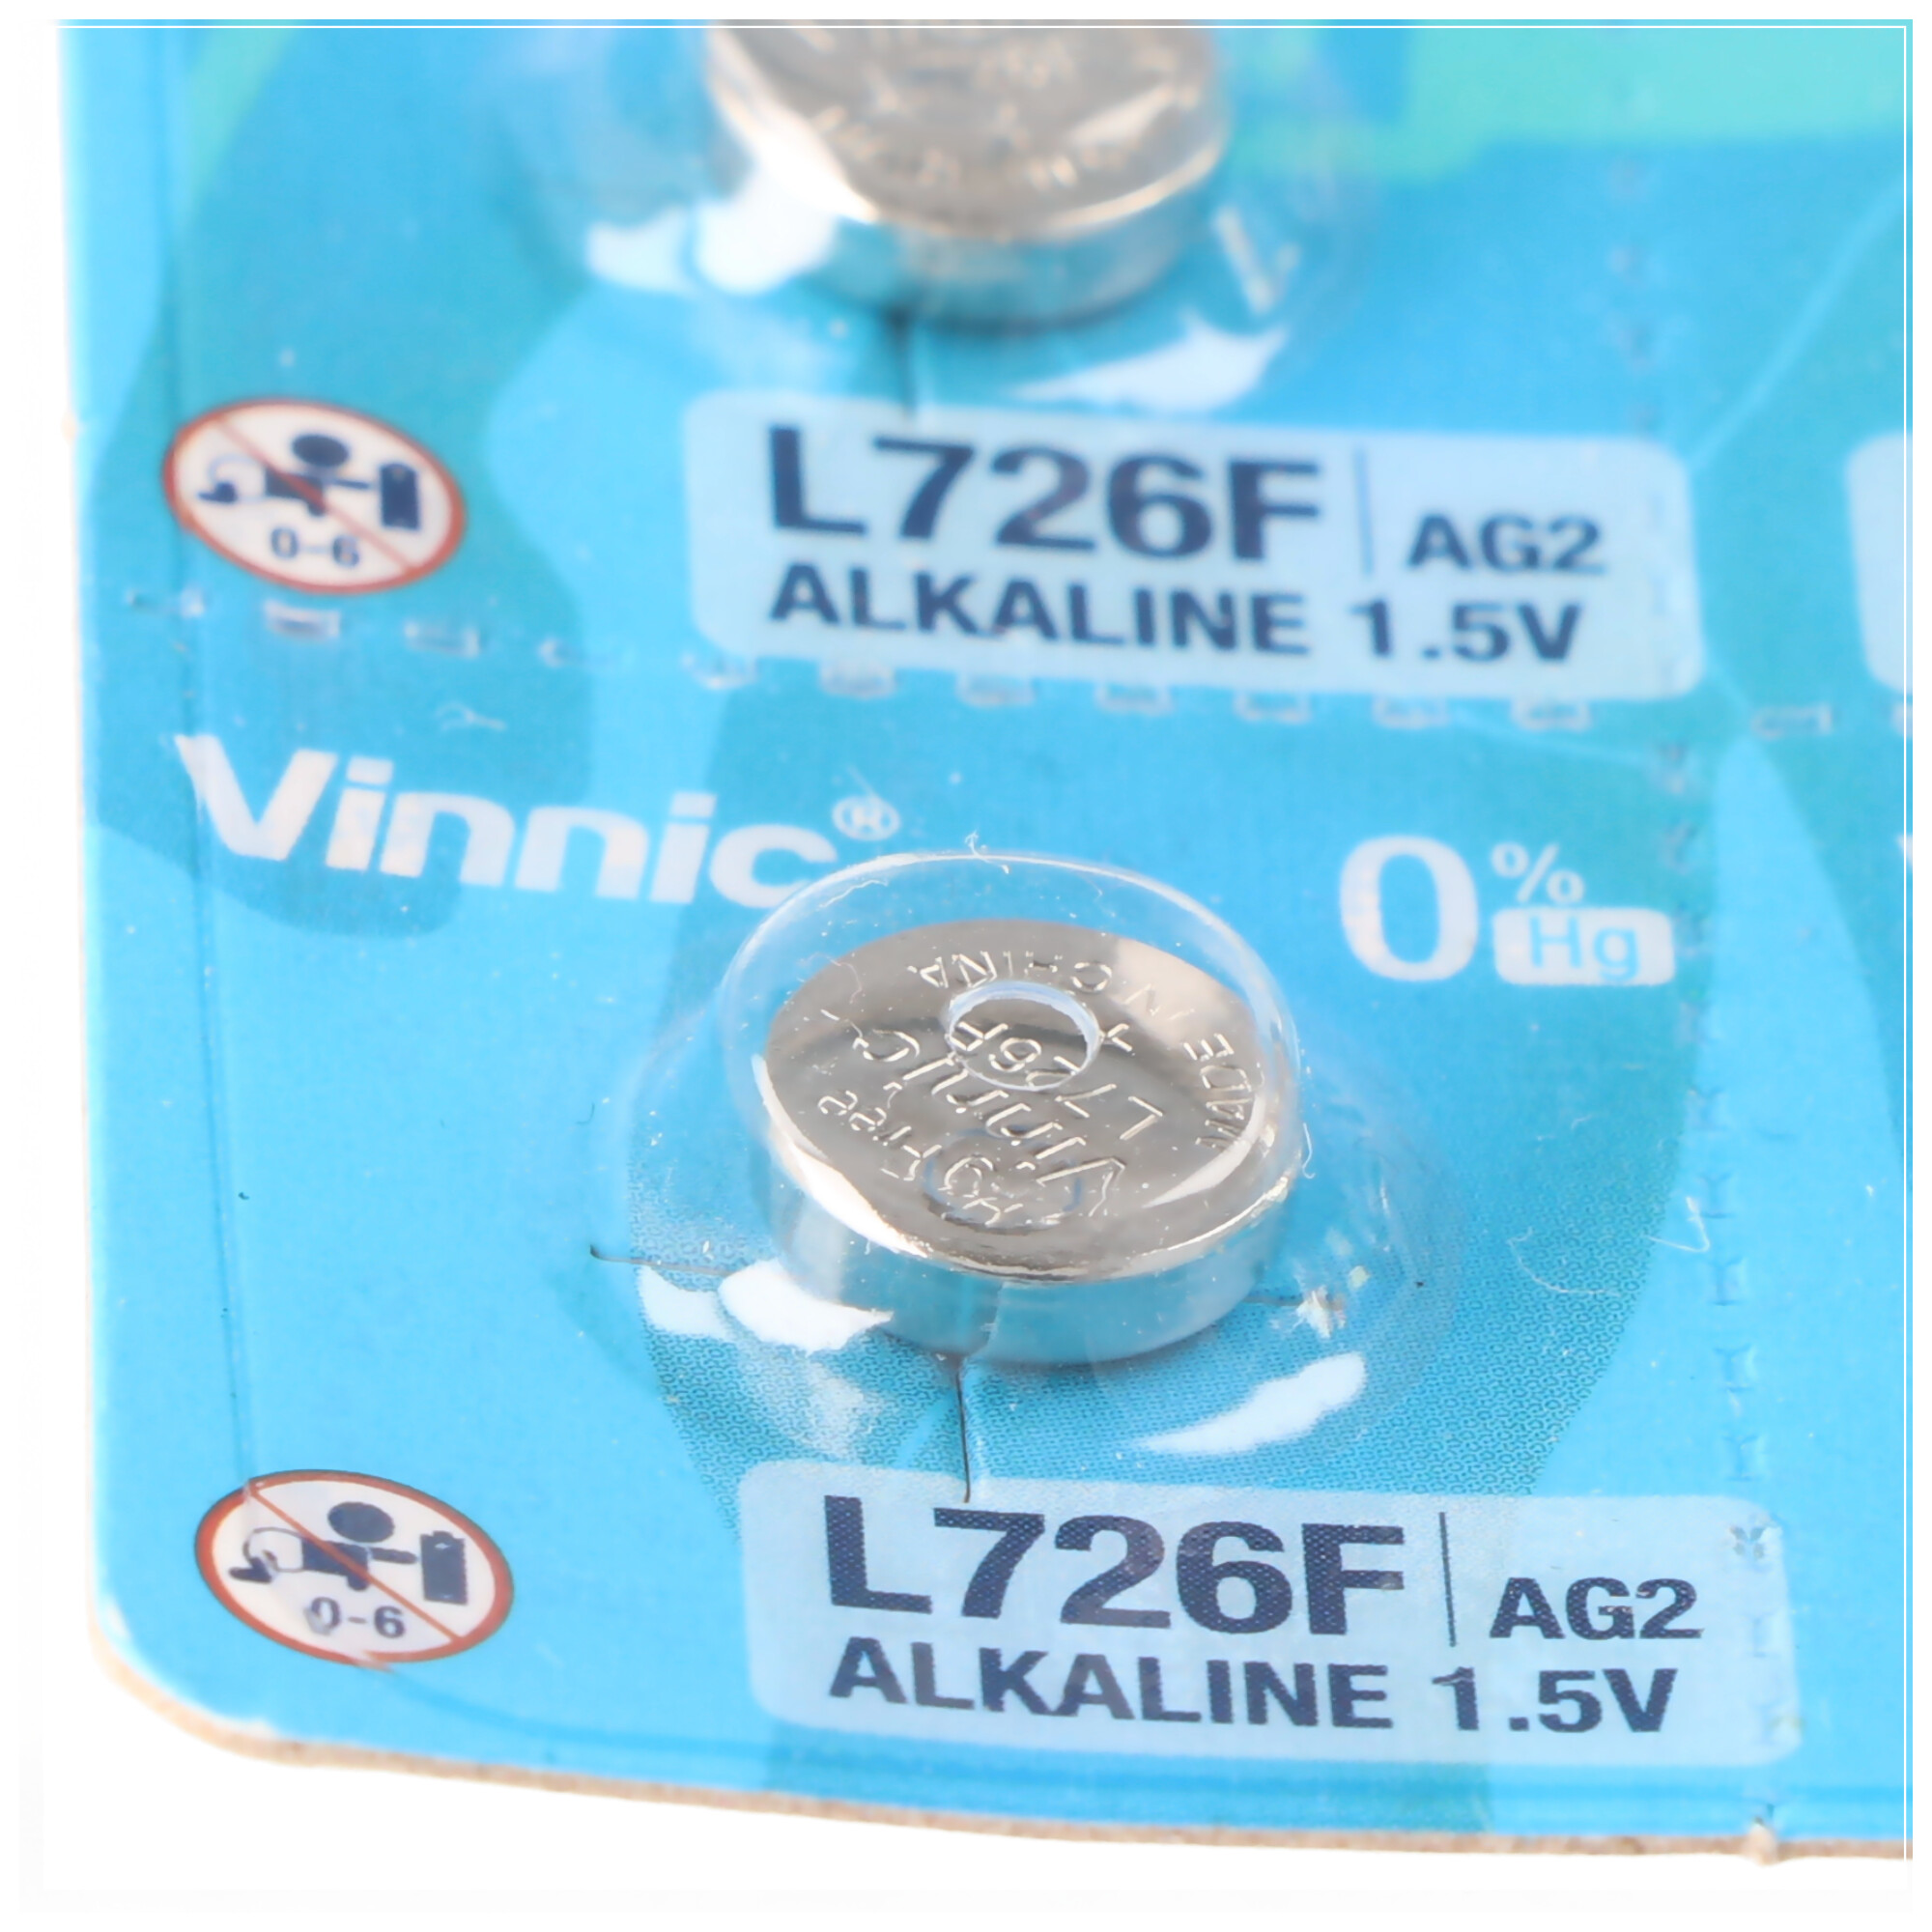 10 Stück AG2 Knopfzellen Mini Vinnic G2, AG2, L726, LR59 Alkaline Batterie